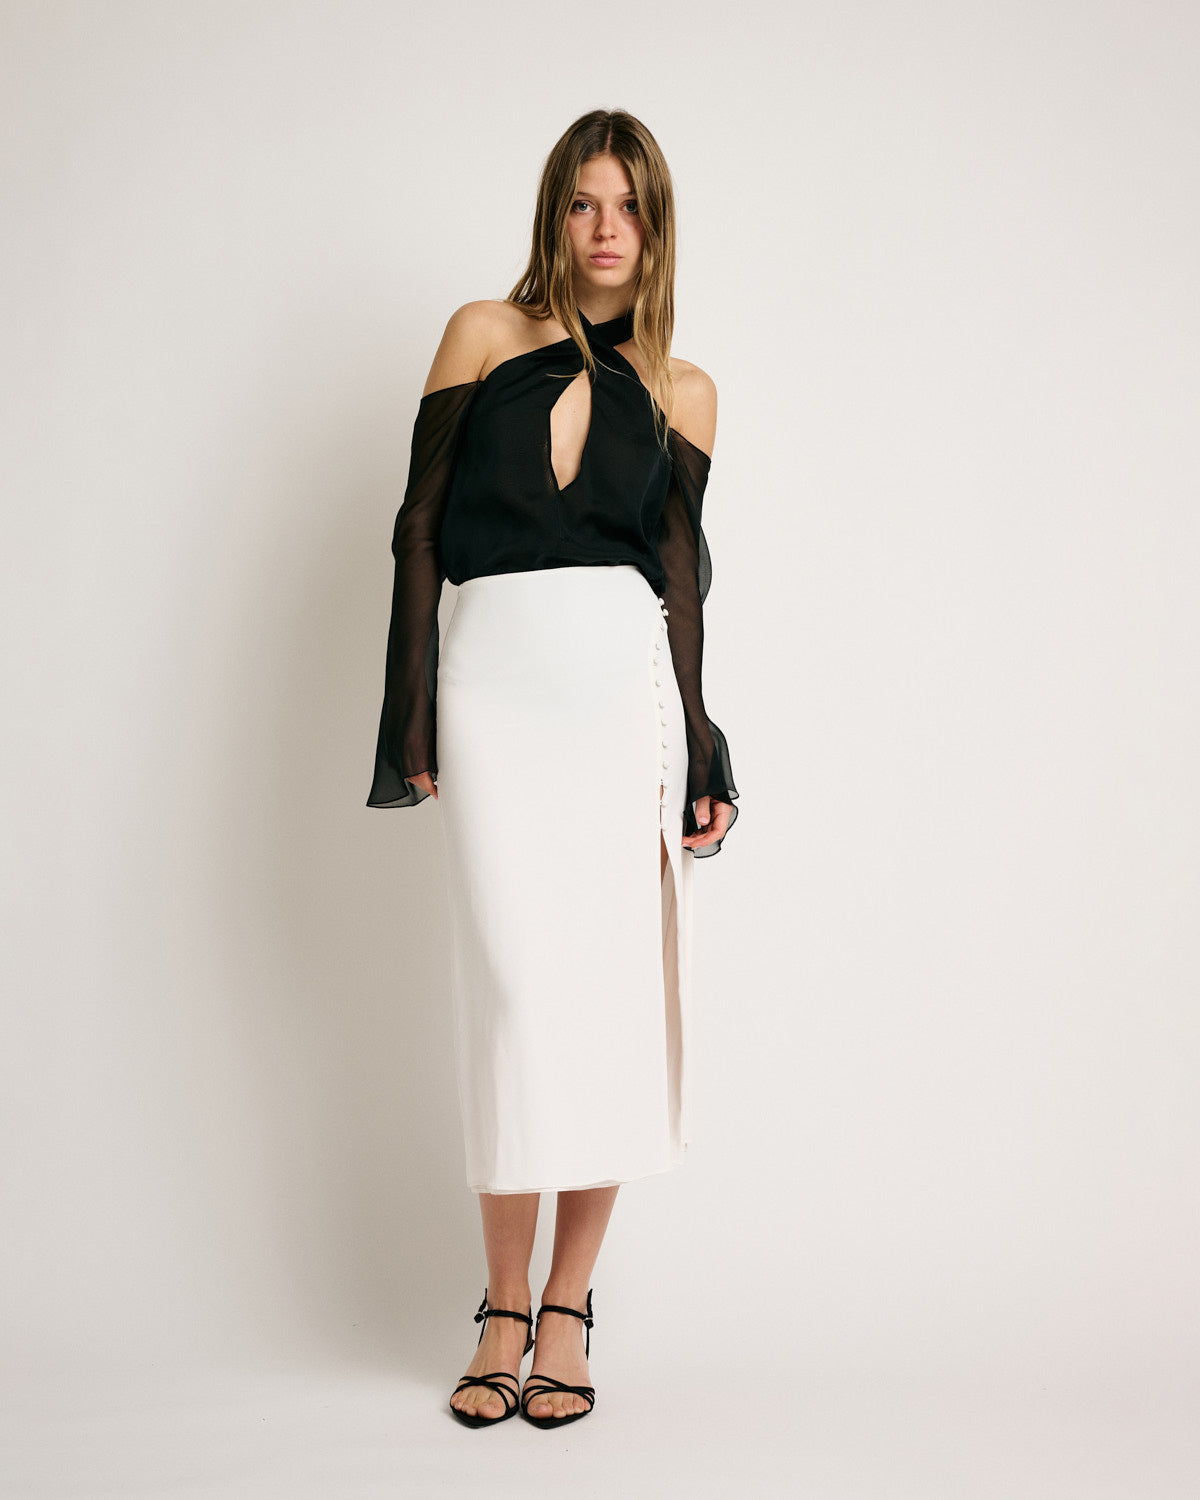 Belle Skirt Solid White Silk Satin Strech